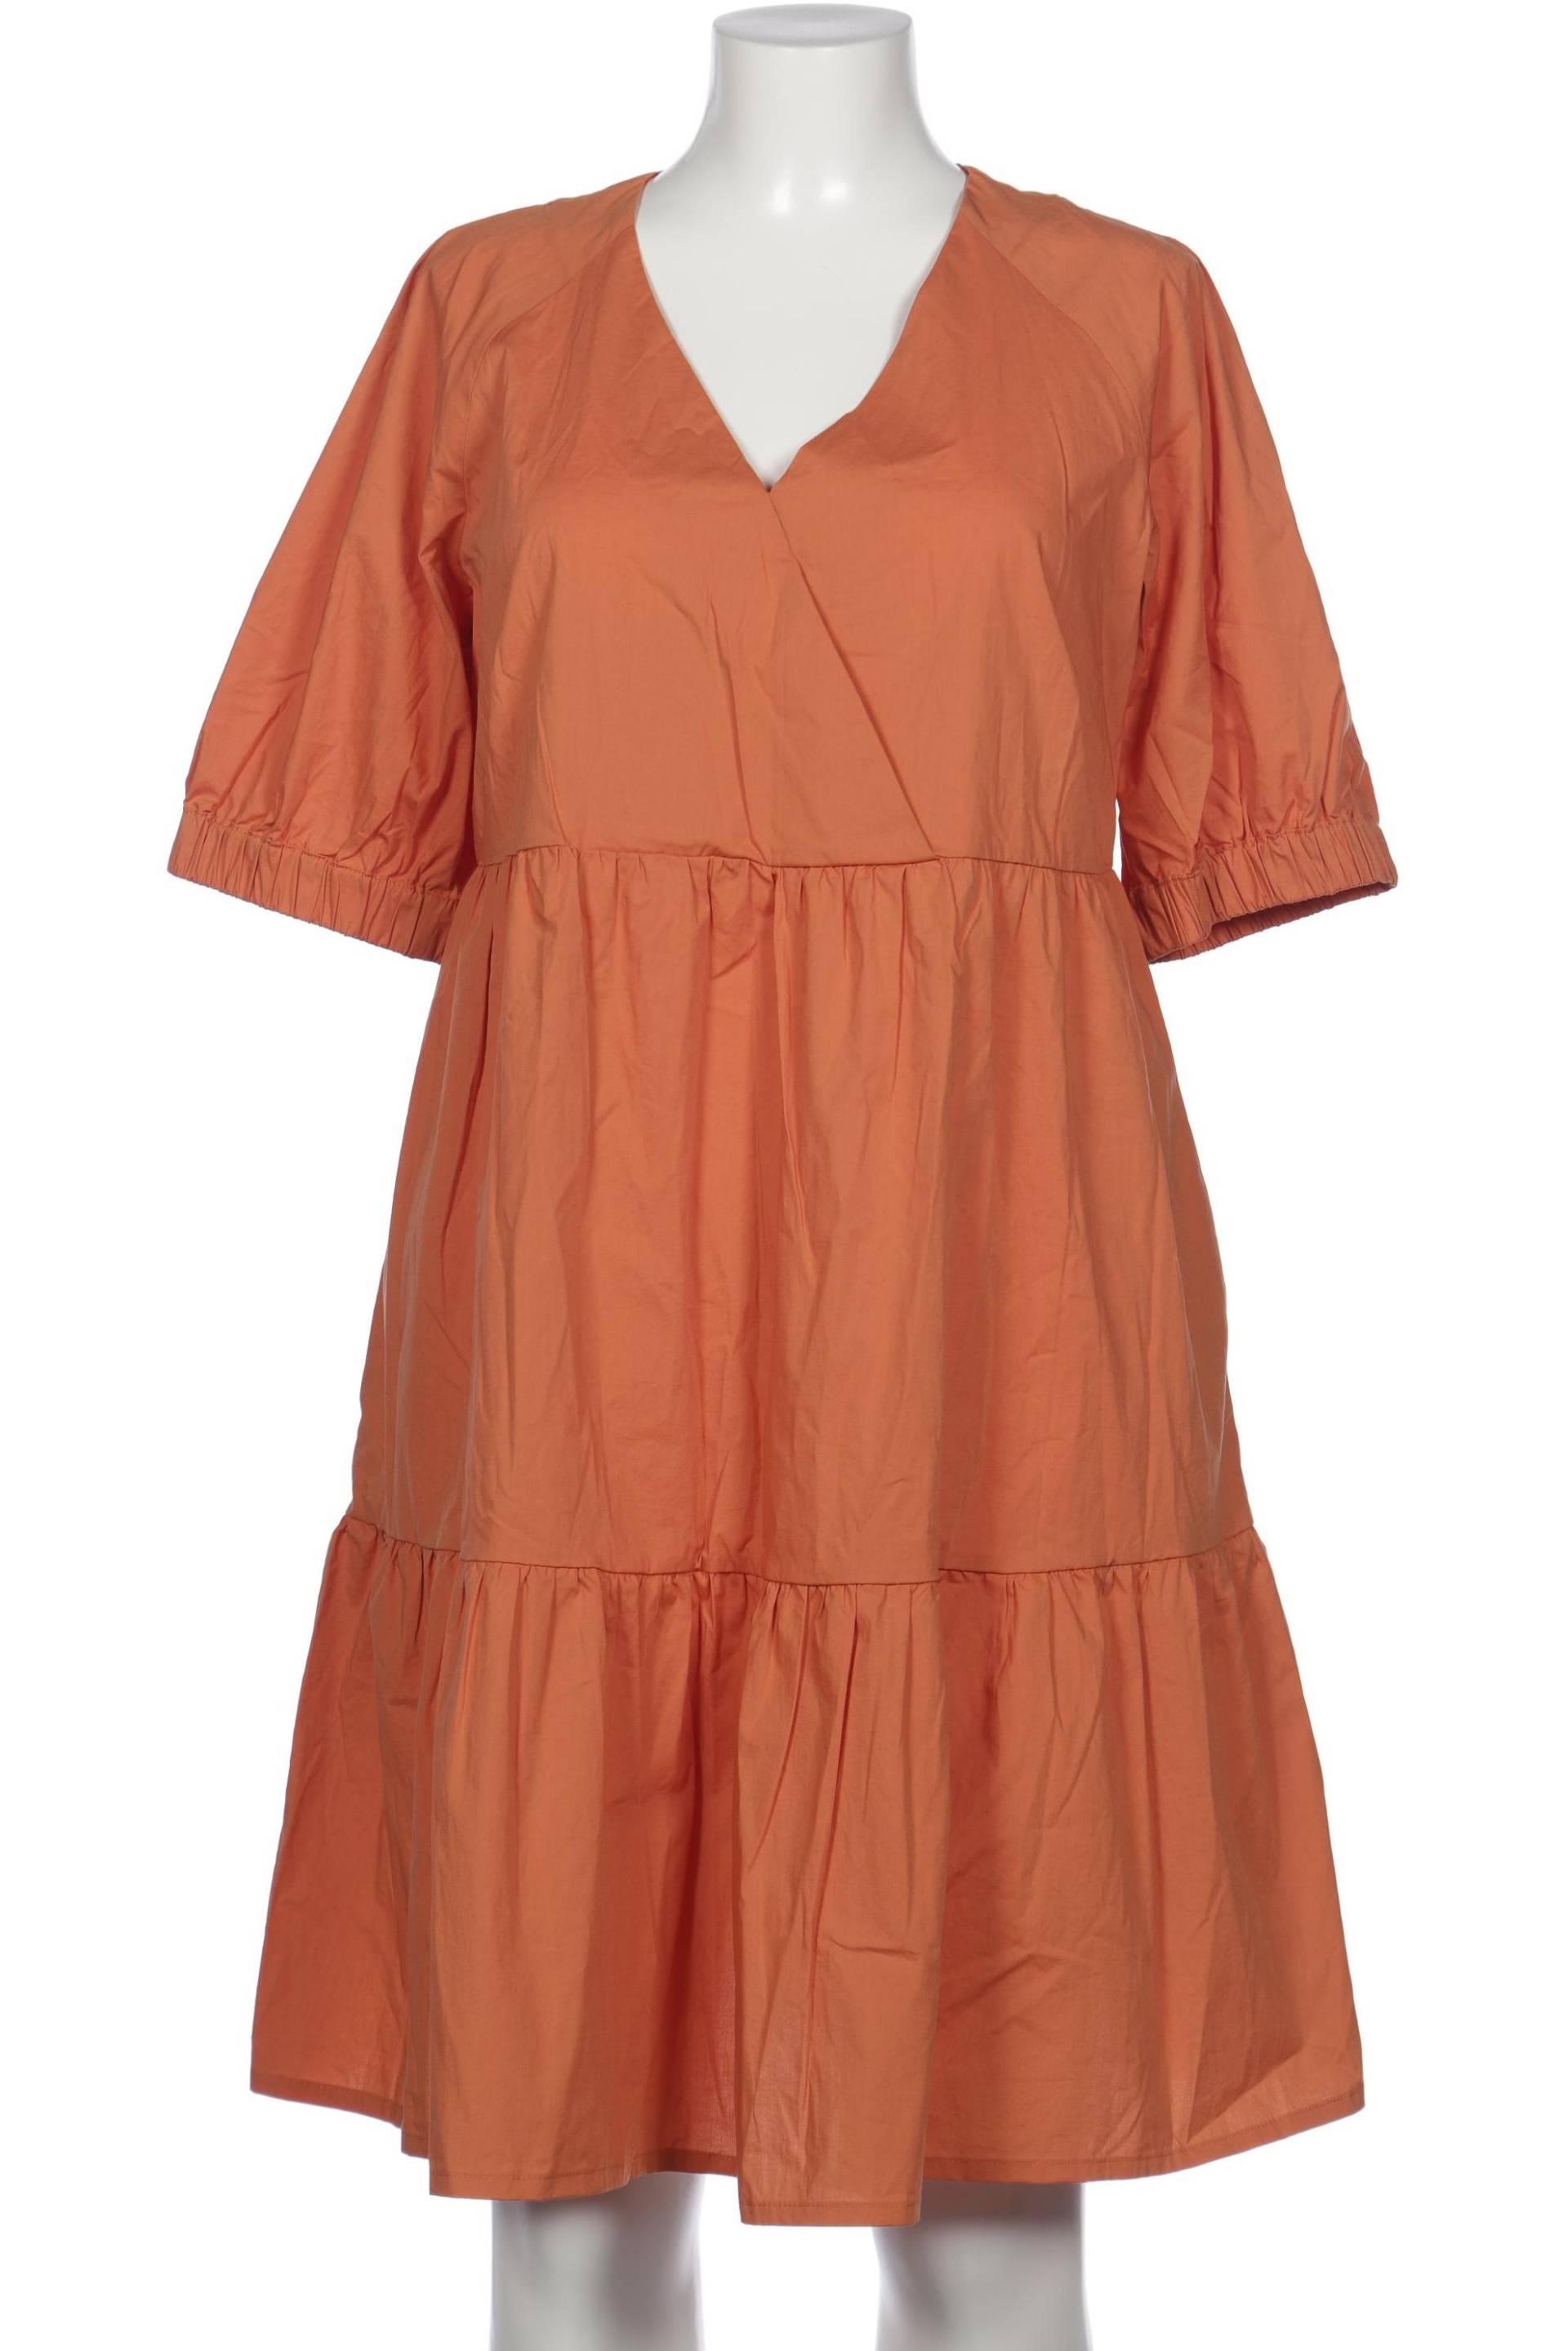 Ivko Damen Kleid, orange, Gr. 44 von IVKO